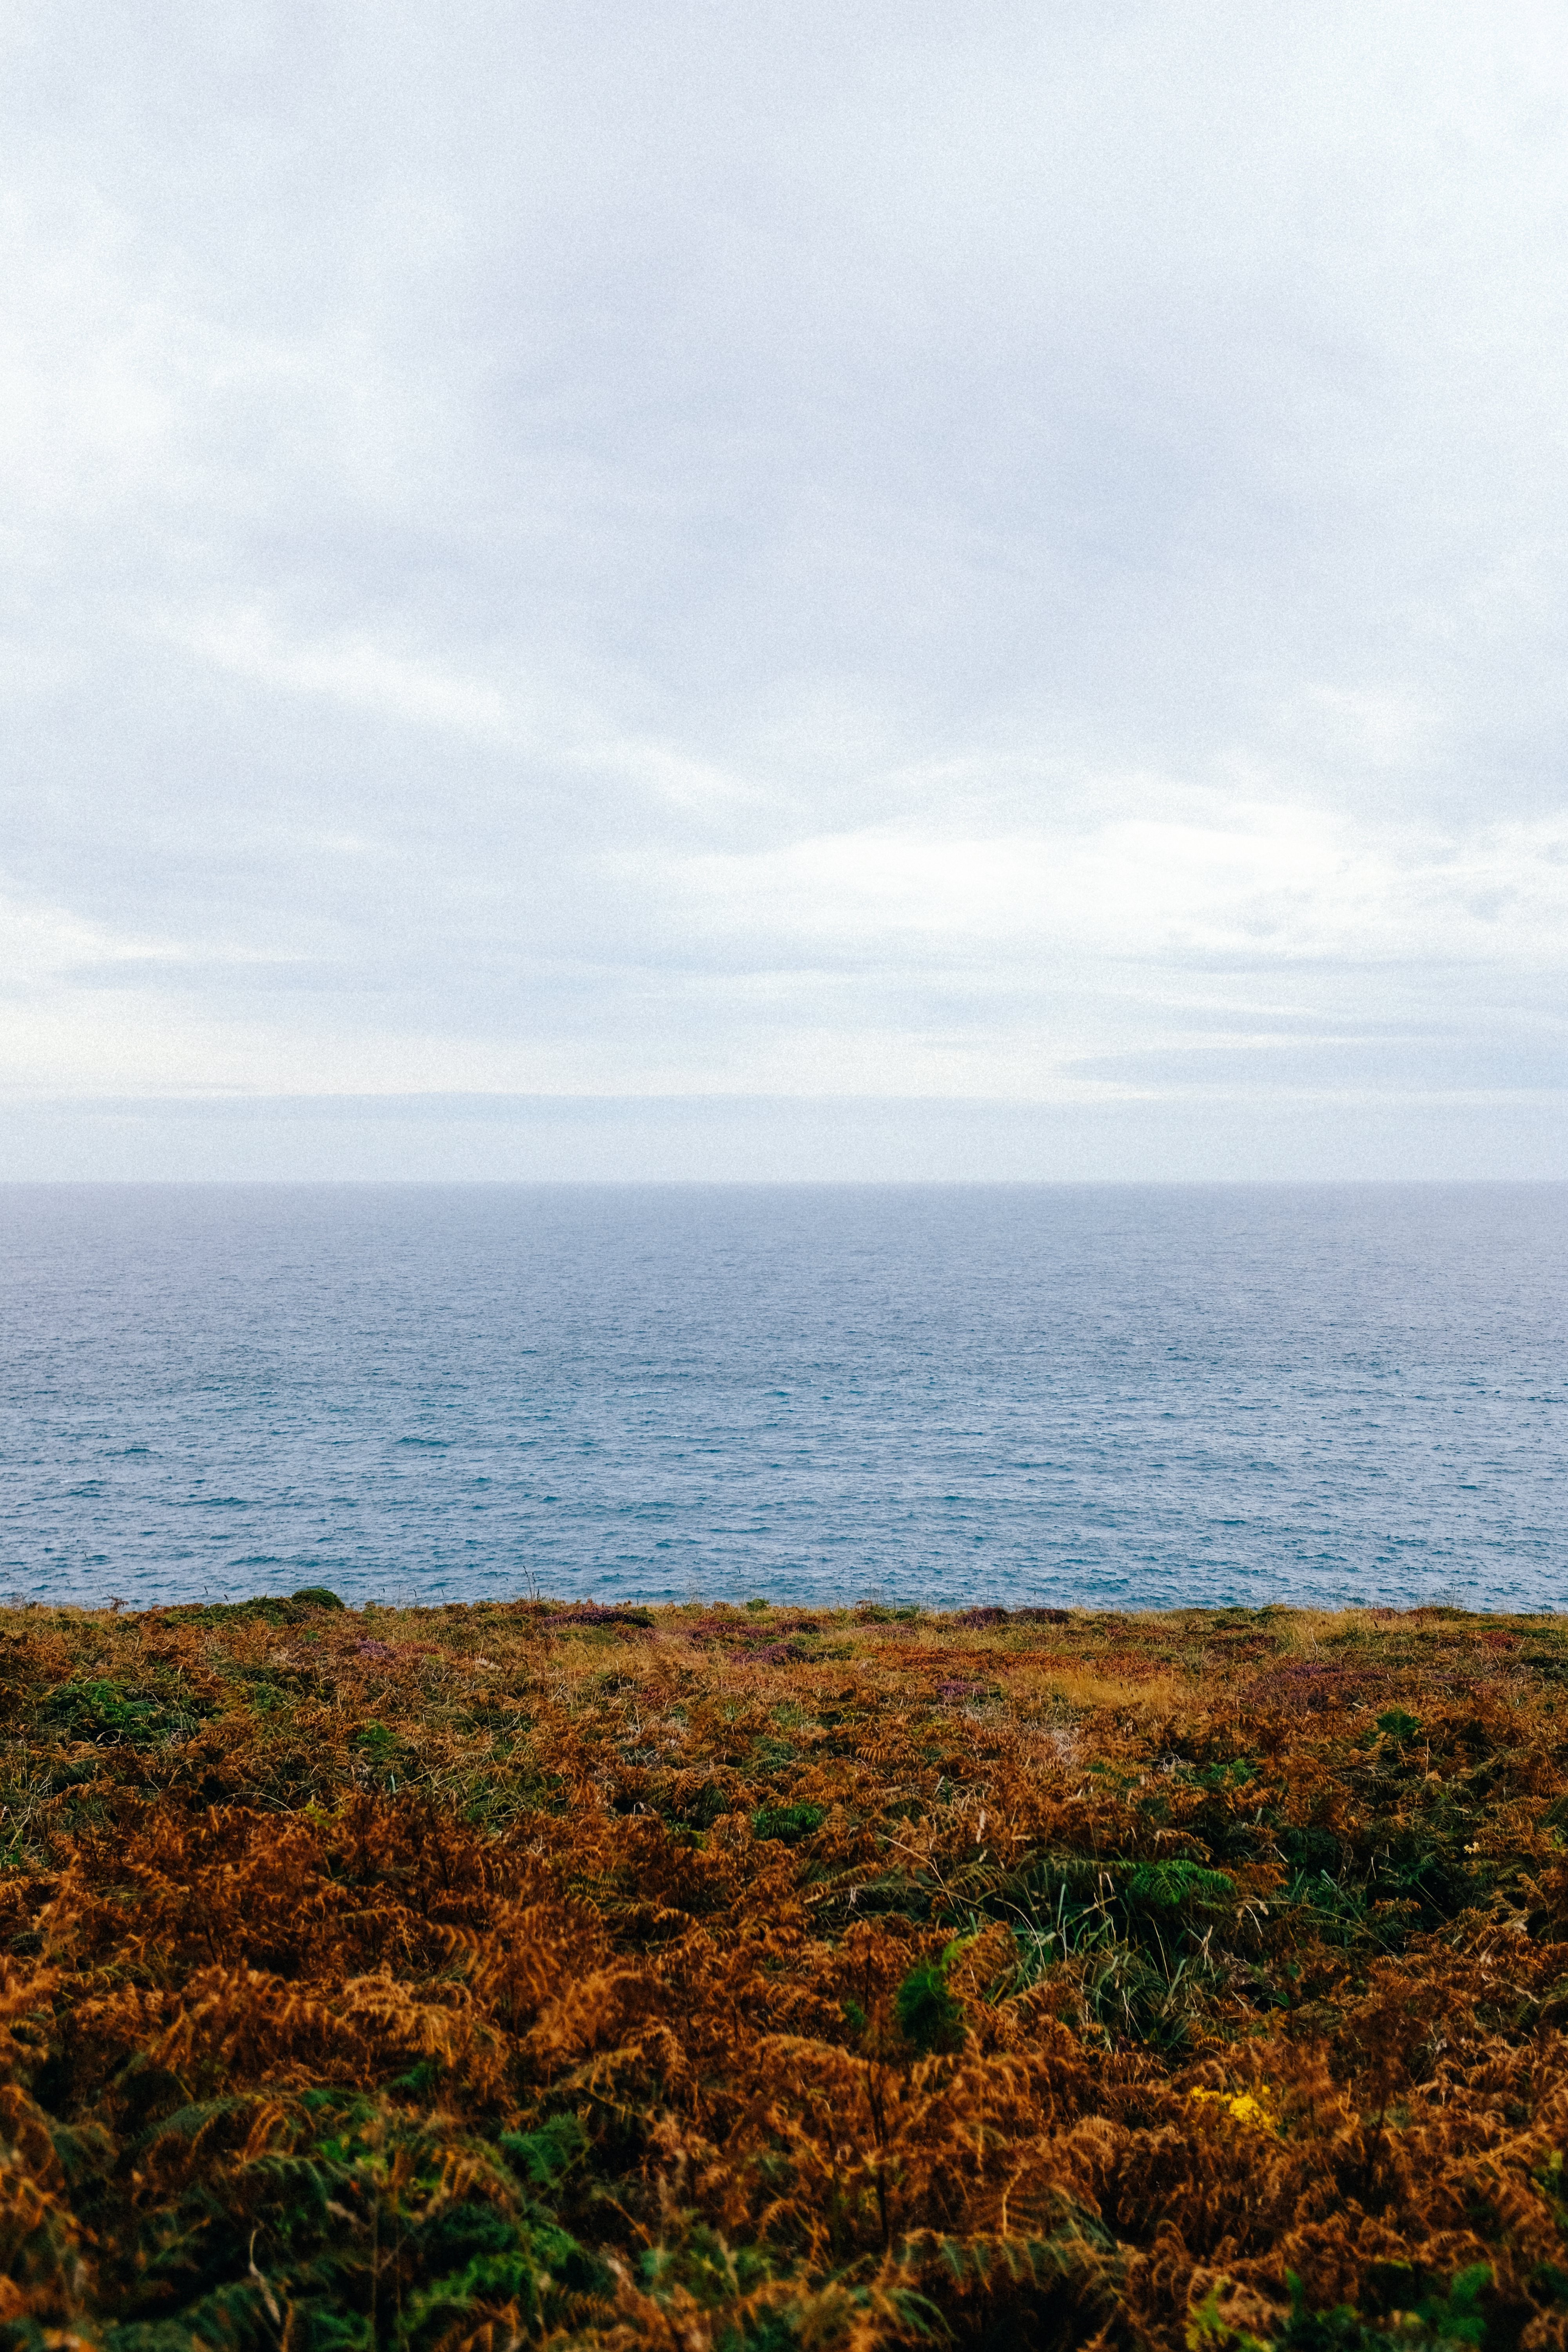 Paisagem do oceano a partir da foto da costa verde e marrom 